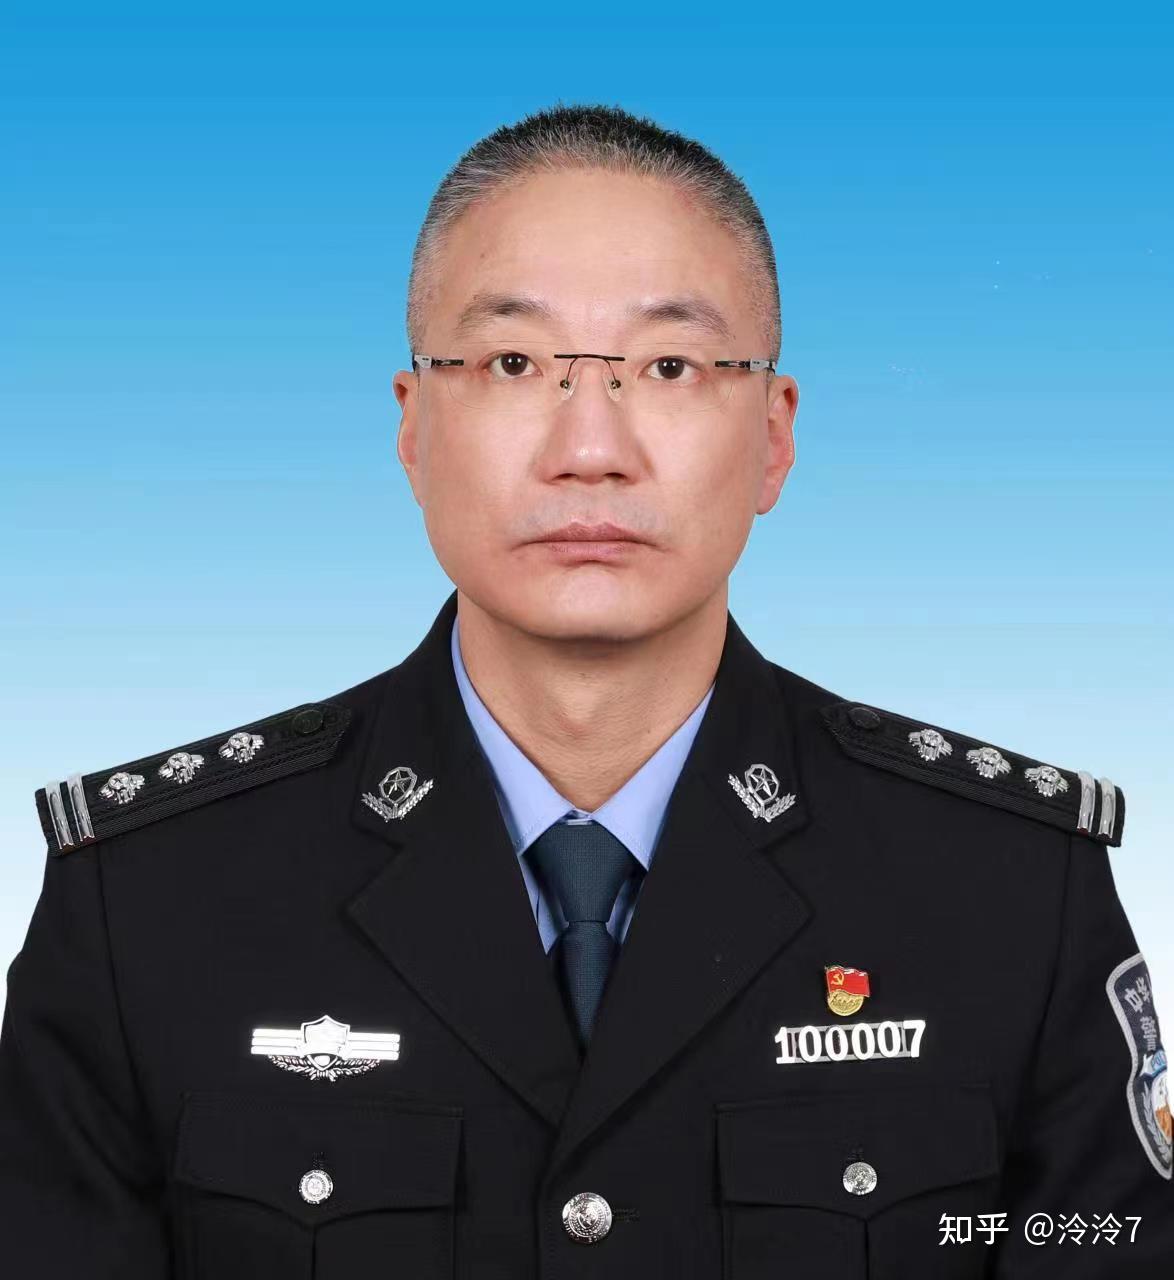 李勇,男,中共党员,现任沈阳市公安局党委委员,副局长